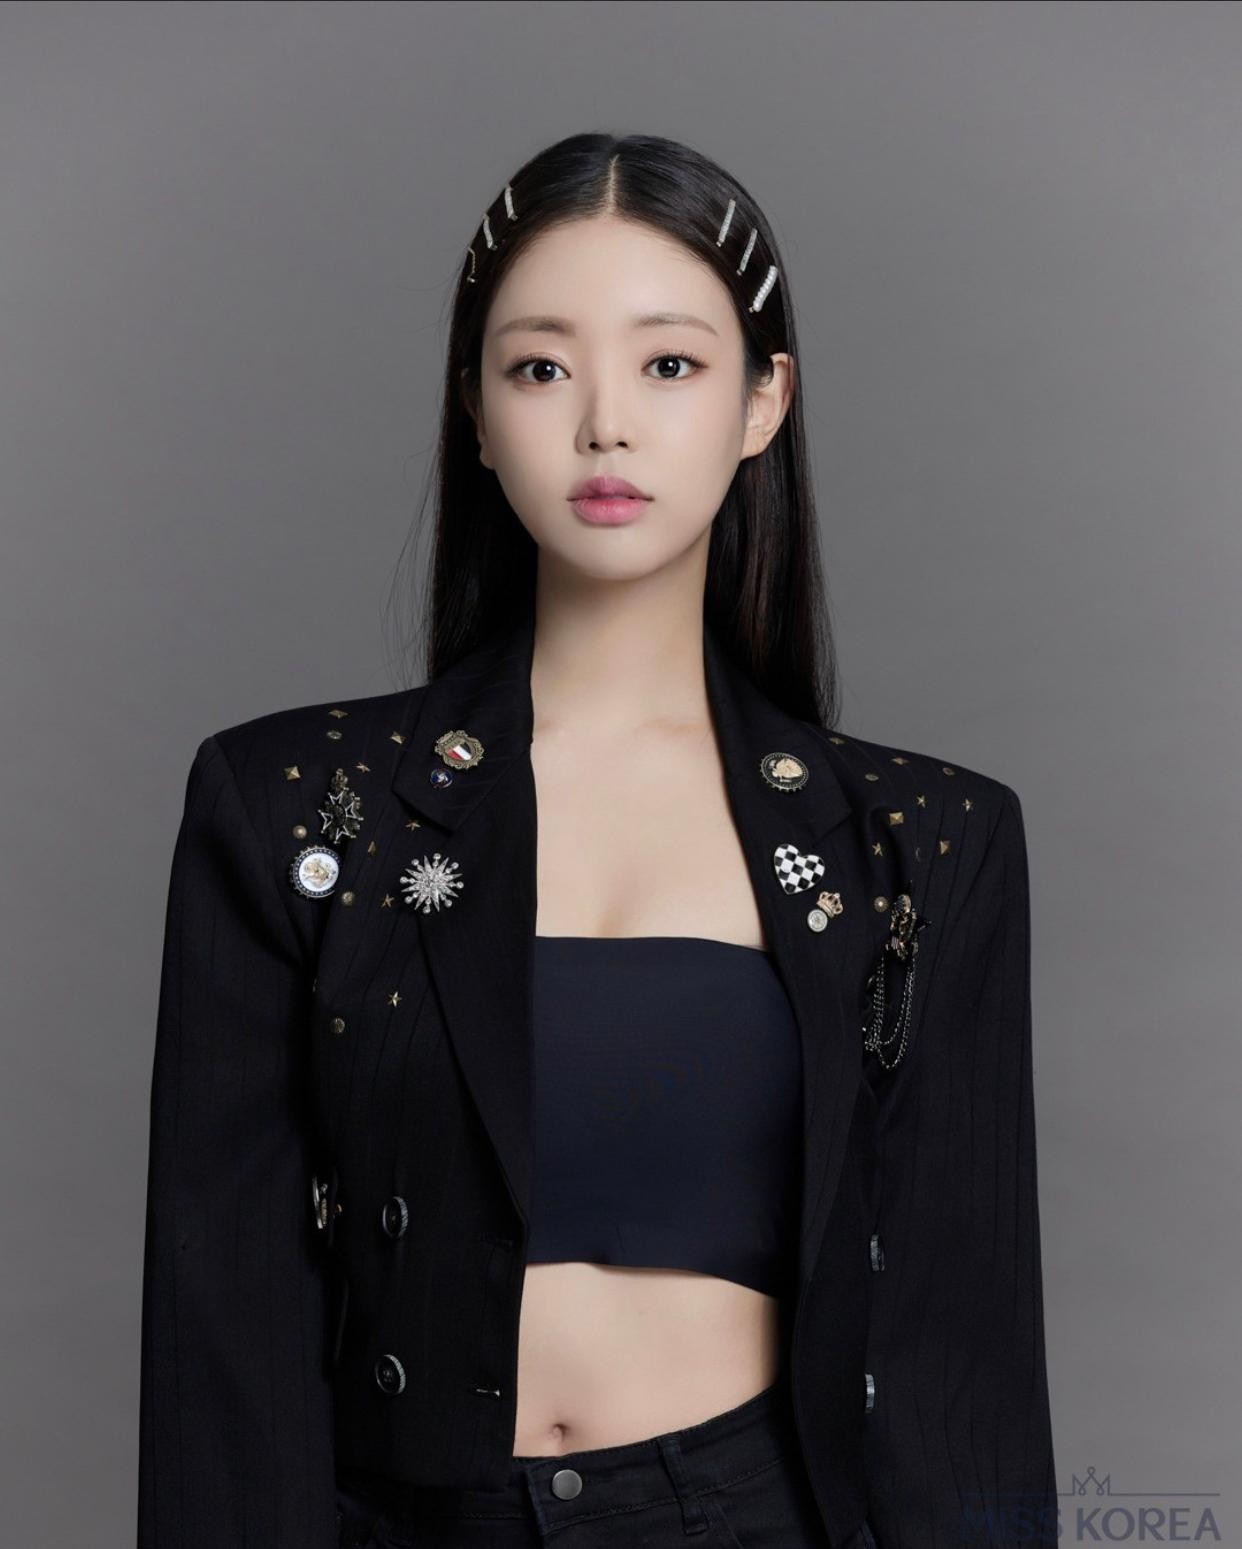 Nhan sắc cô gái 23 tuổi vừa đăng quang Hoa hậu Hàn Quốc - Ảnh 6.